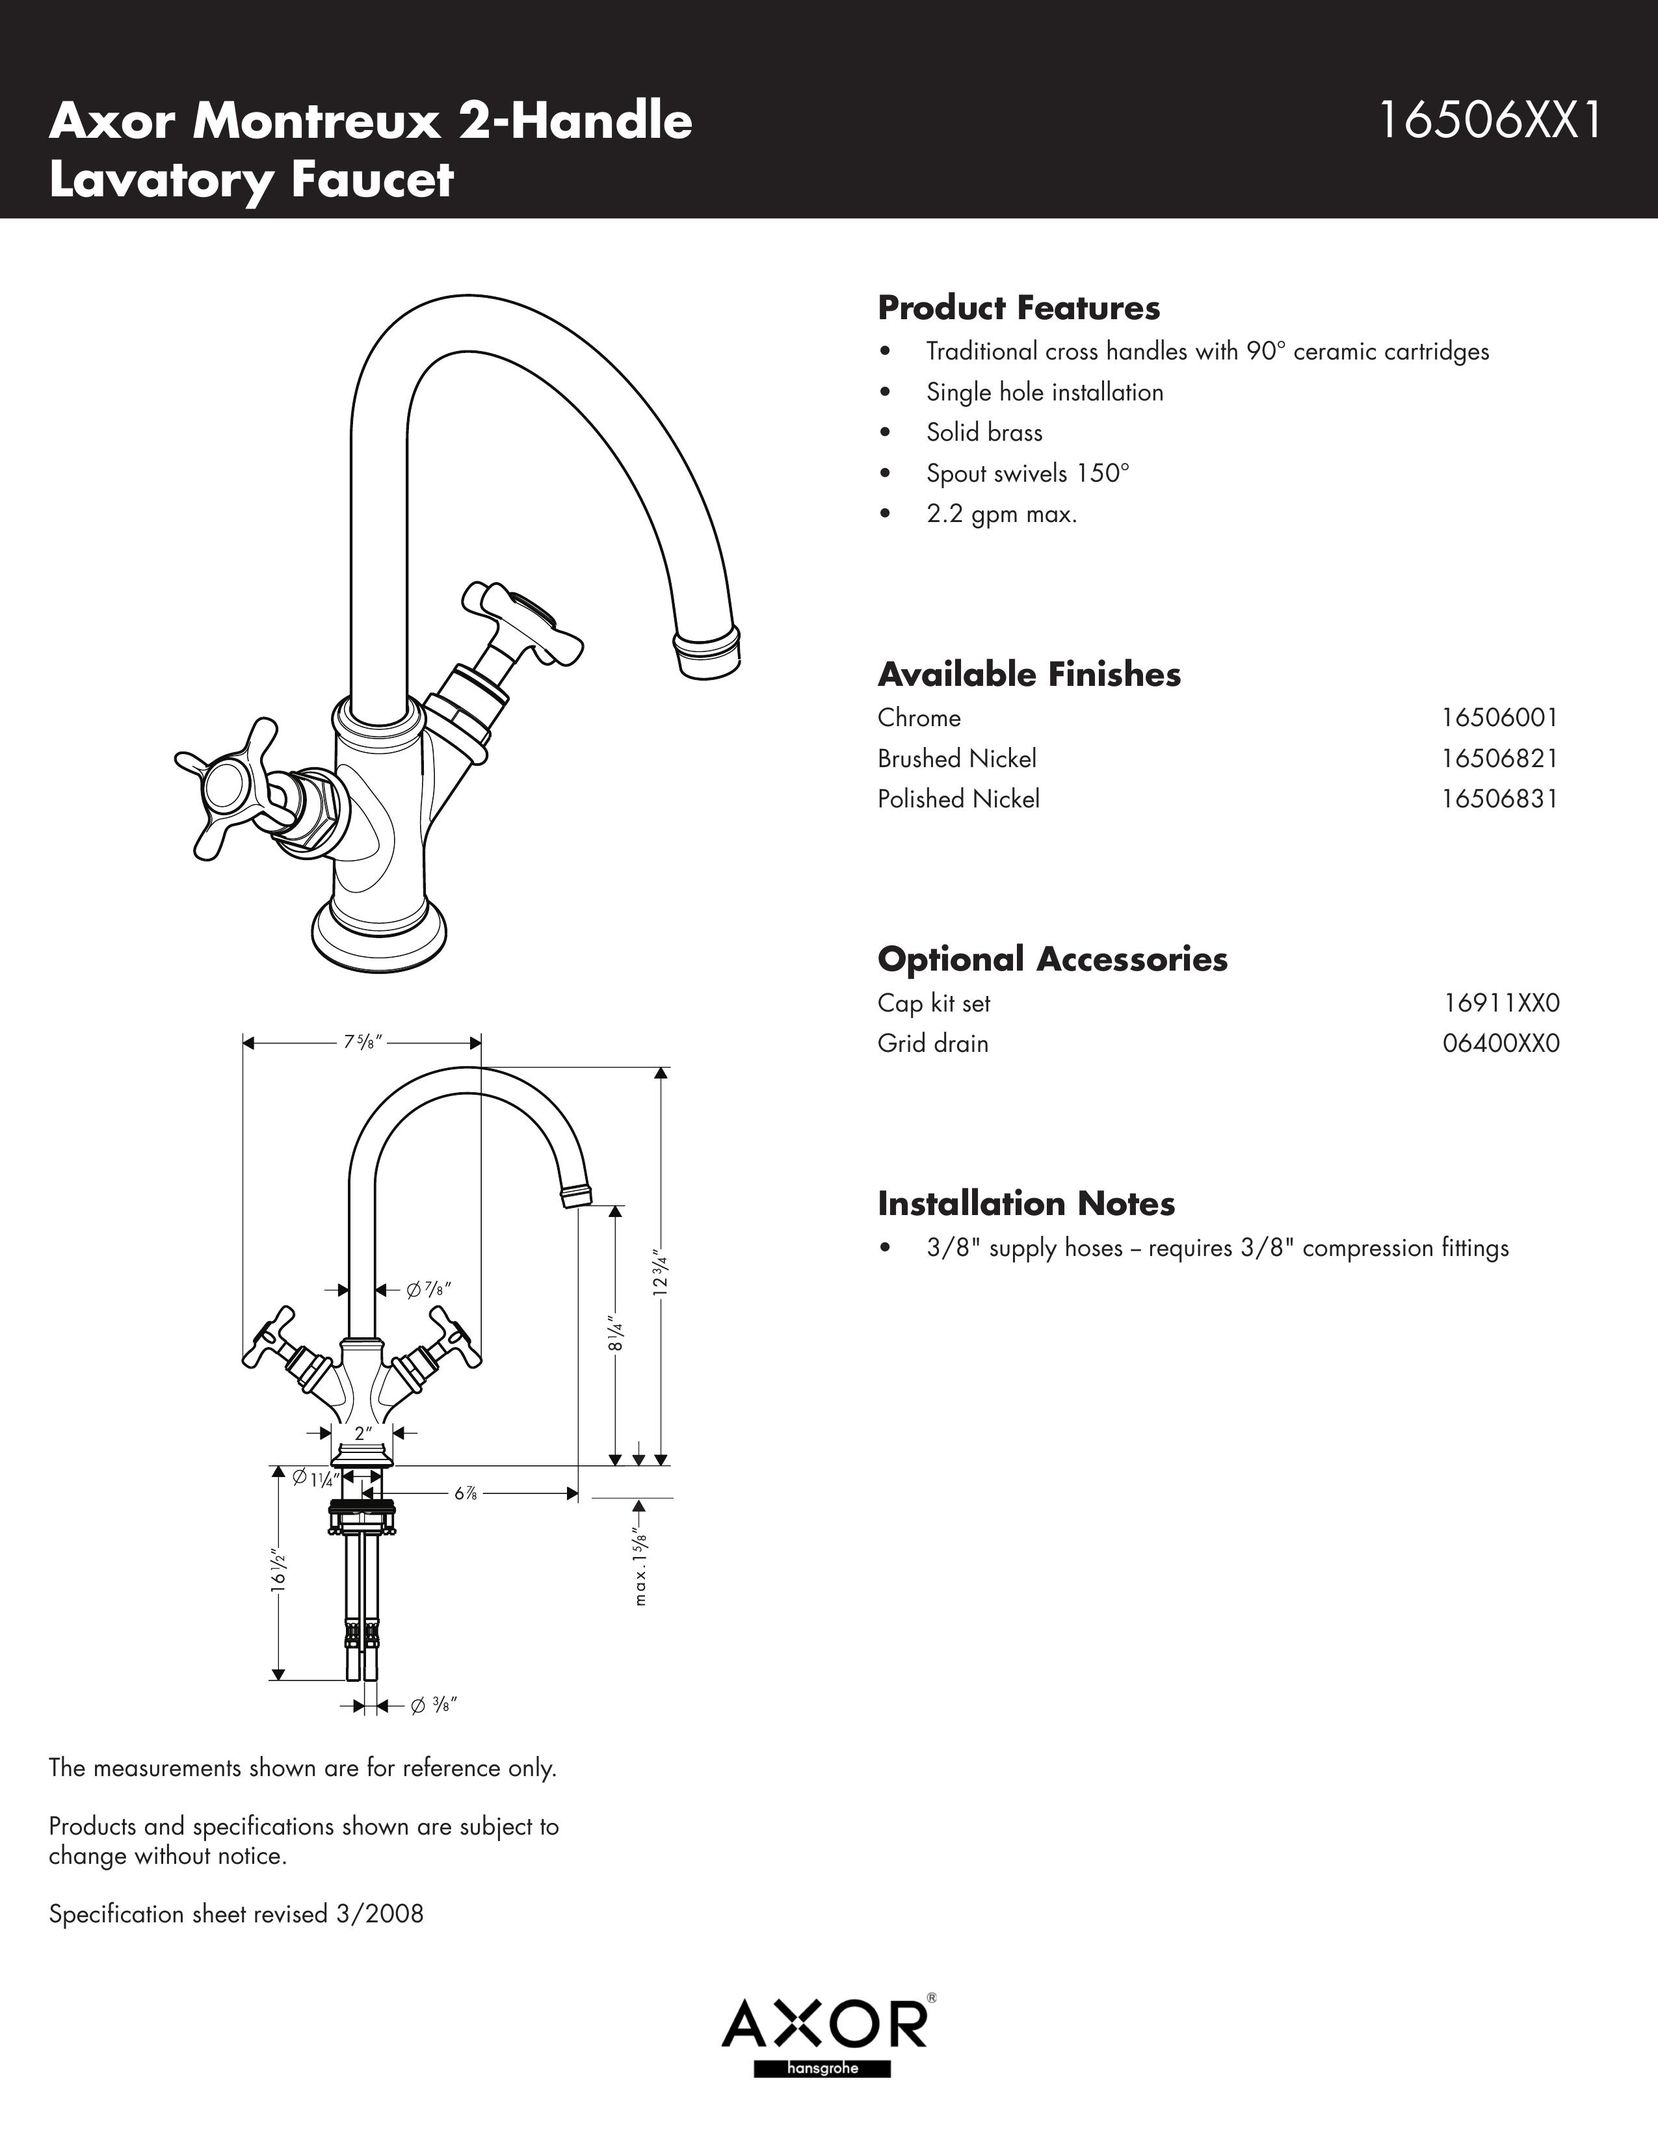 Axor 16506831 Indoor Furnishings User Manual